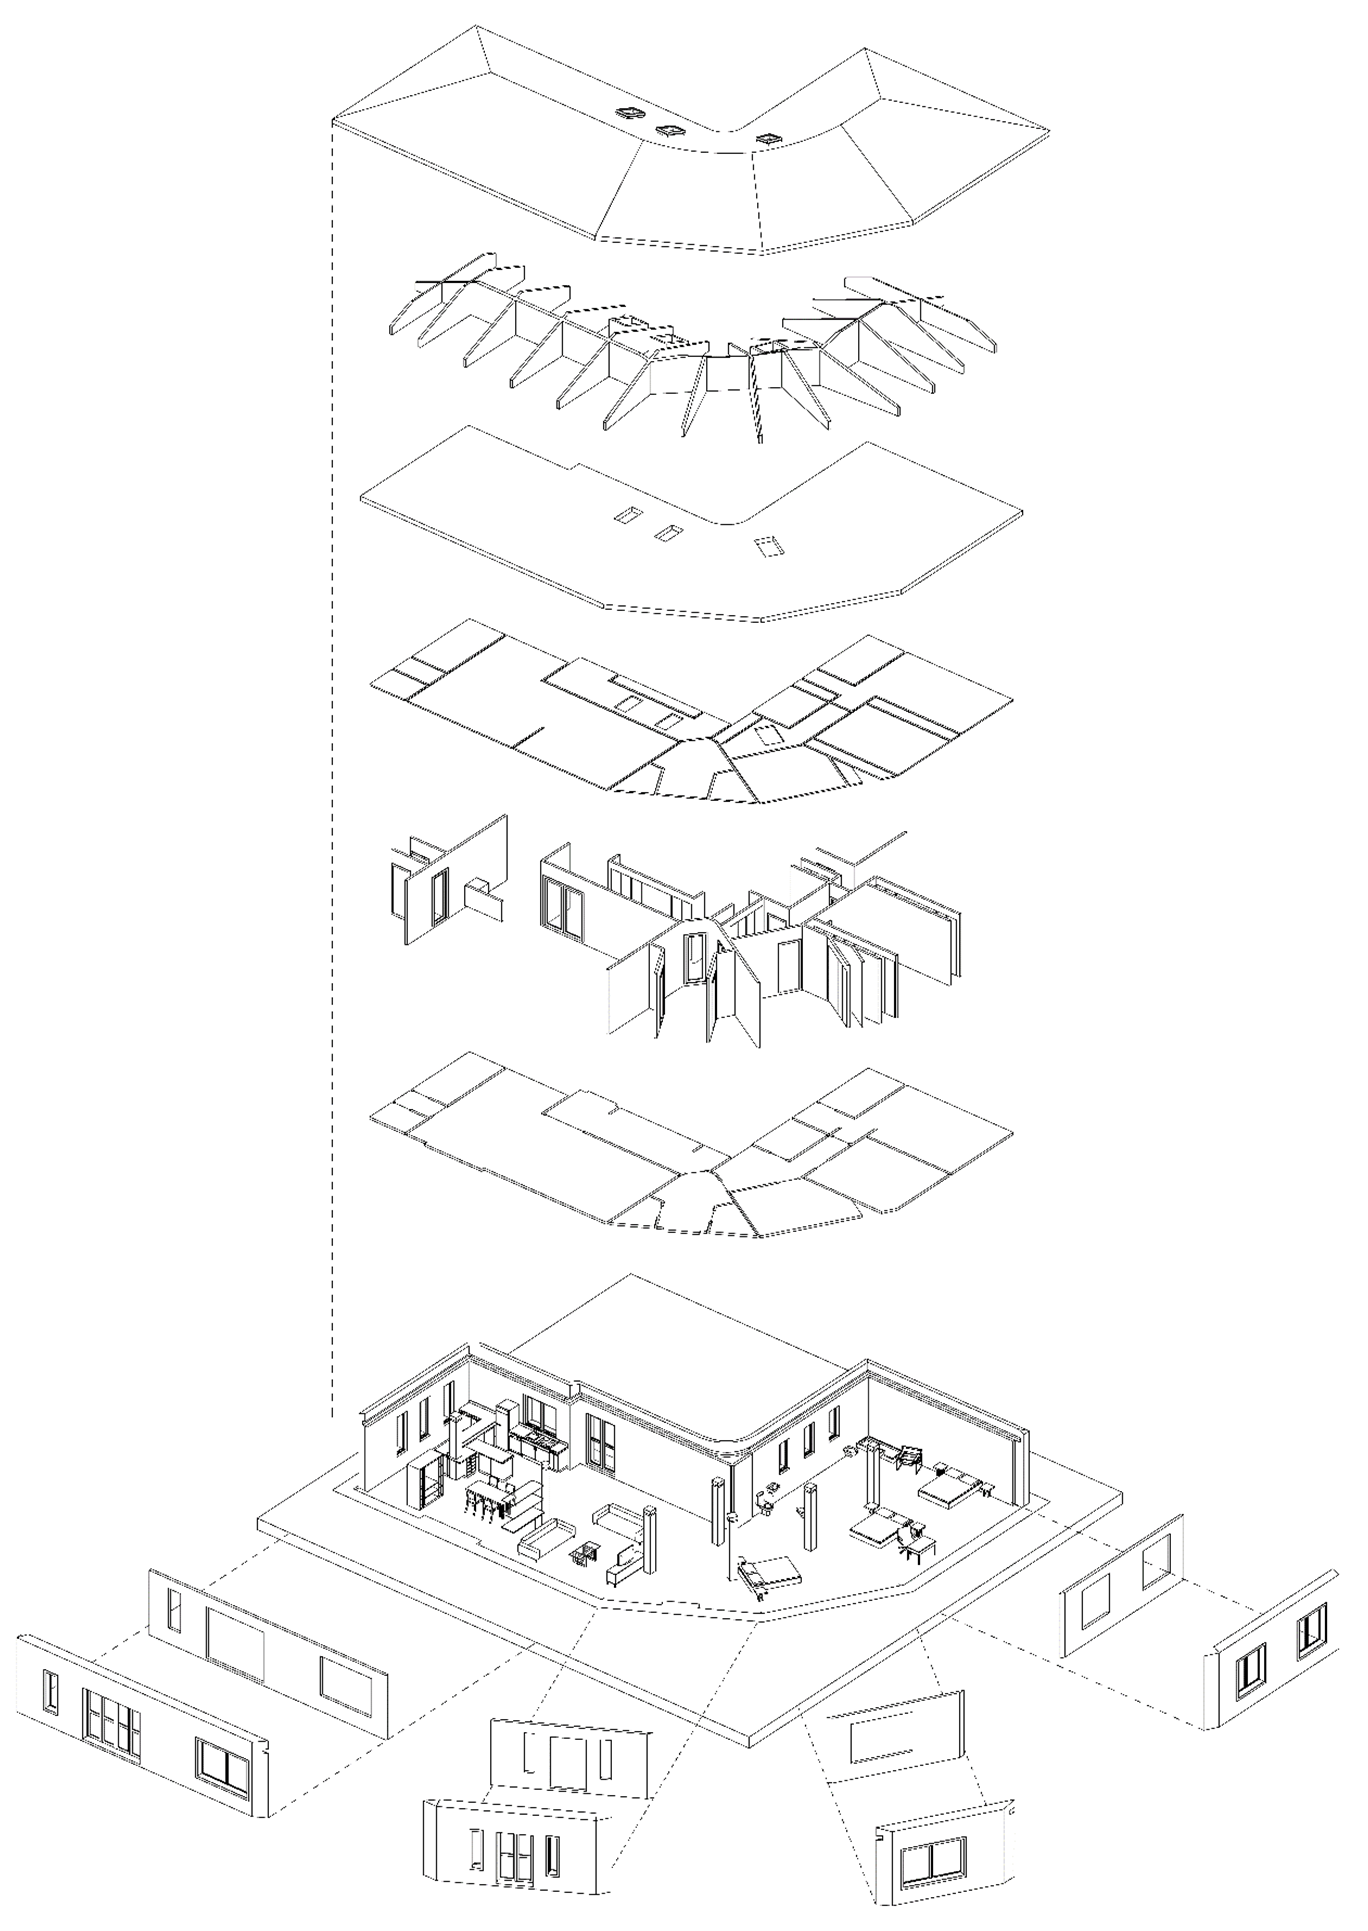 Ilustración 10 - Elaboración propia. Elementos constructivos del modelo 3D: cubiertas, techos, muros y suelos.